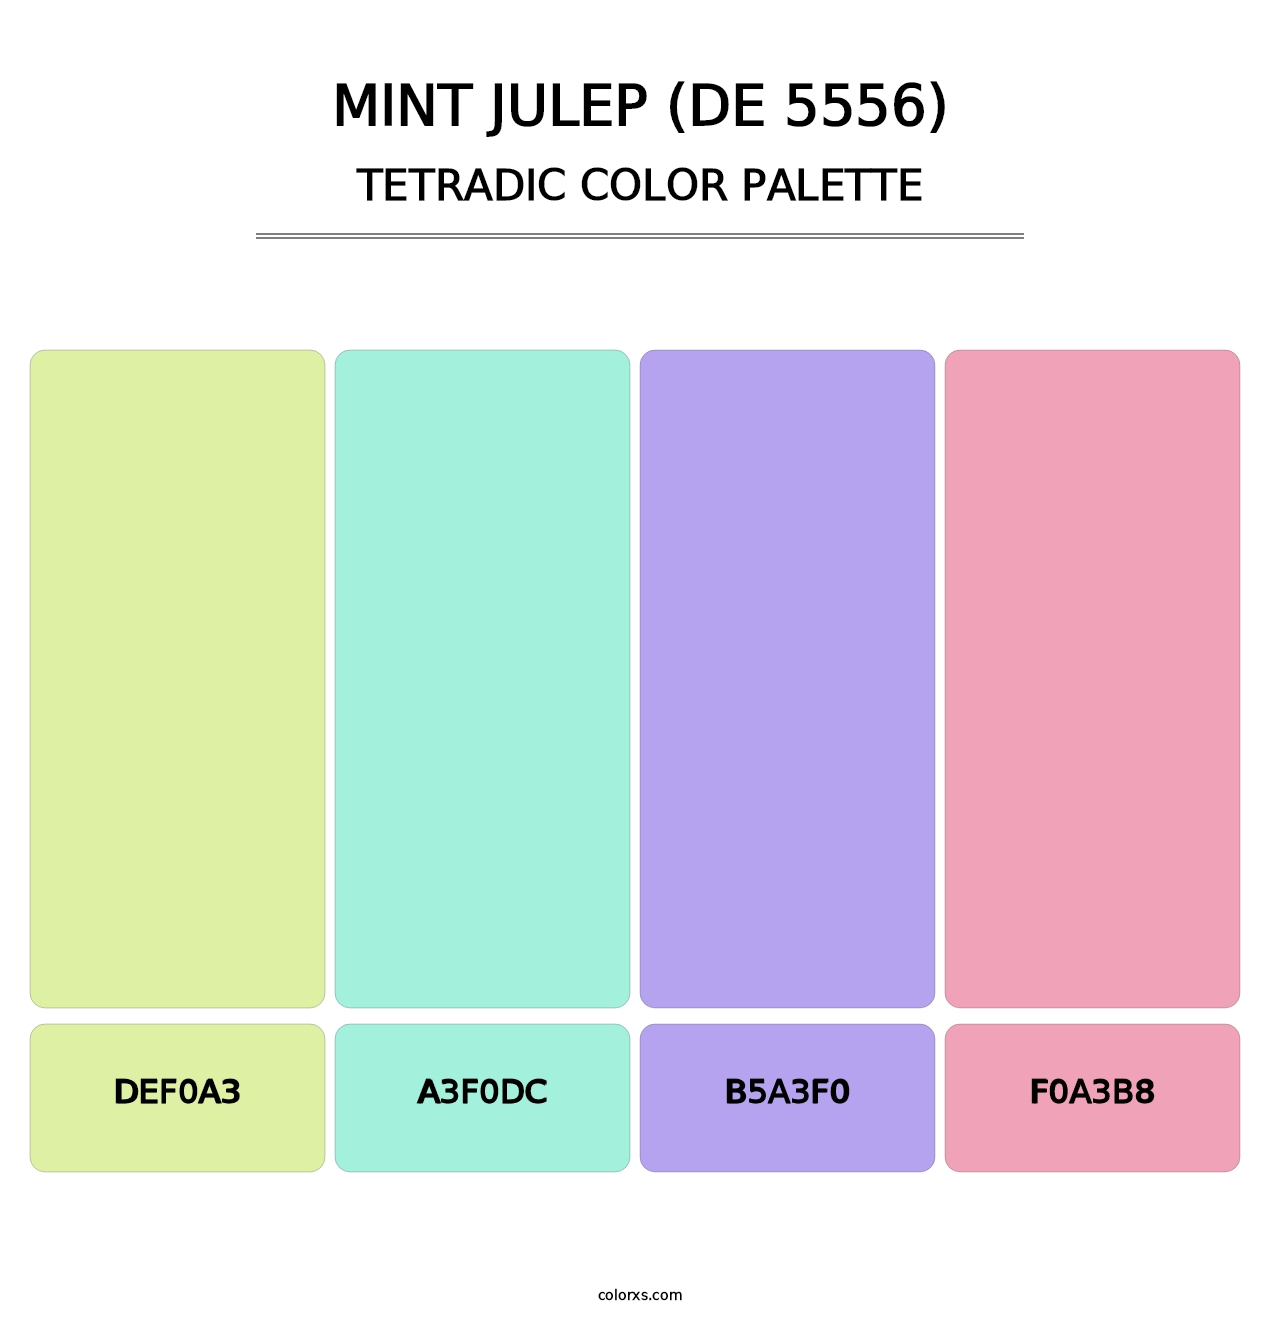 Mint Julep (DE 5556) - Tetradic Color Palette